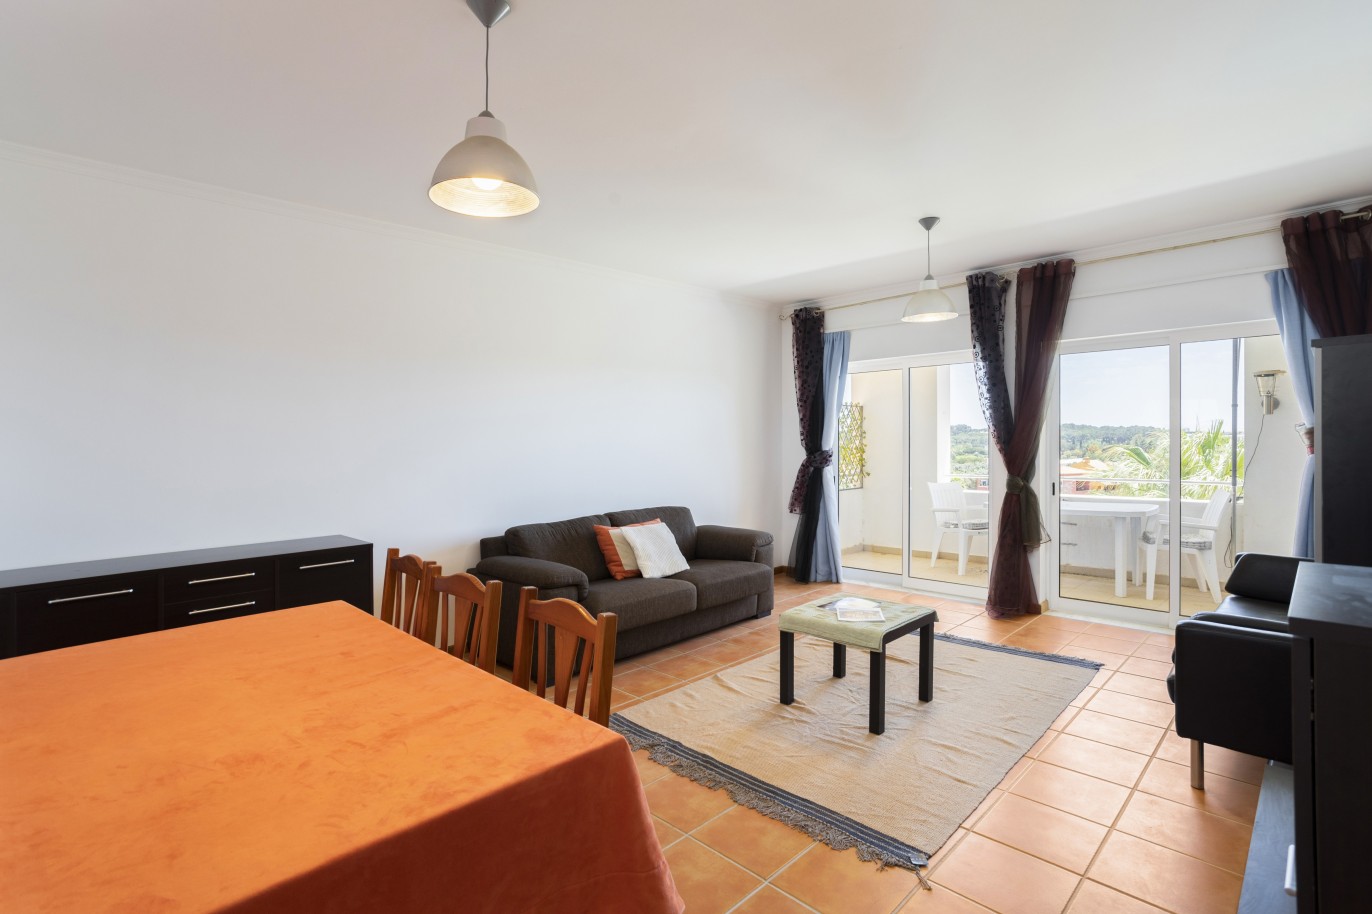 Piso de 3 dormitorios en condominio cerrado, en venta en vilamoura, Algarve_224425